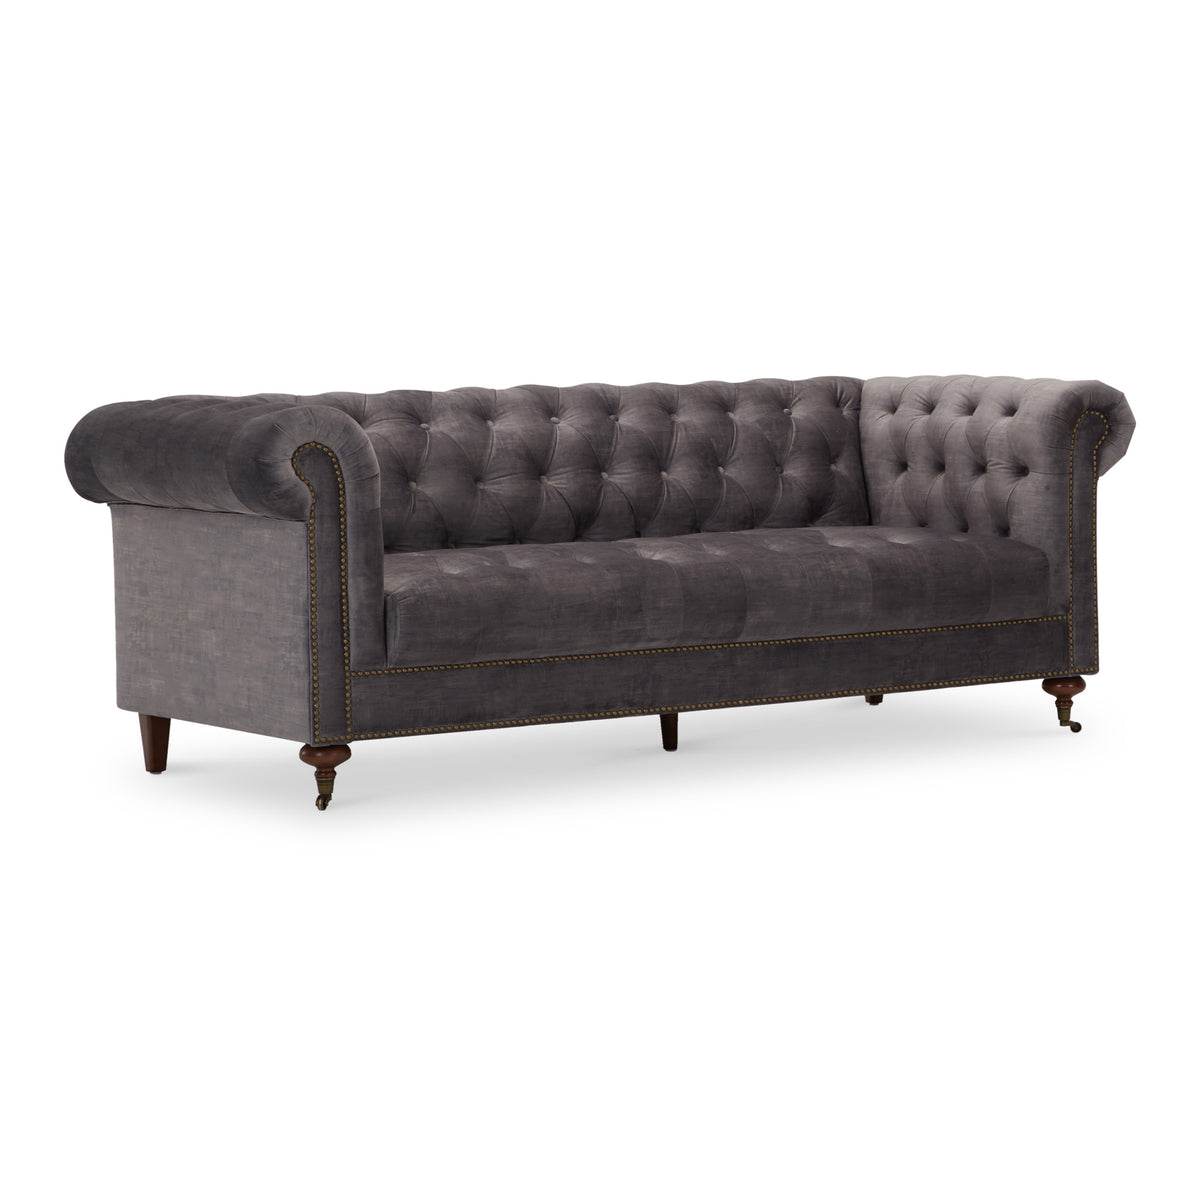 Stanhope Steel Grey Velvet 3 Seater Sofa from Roseland Furniture